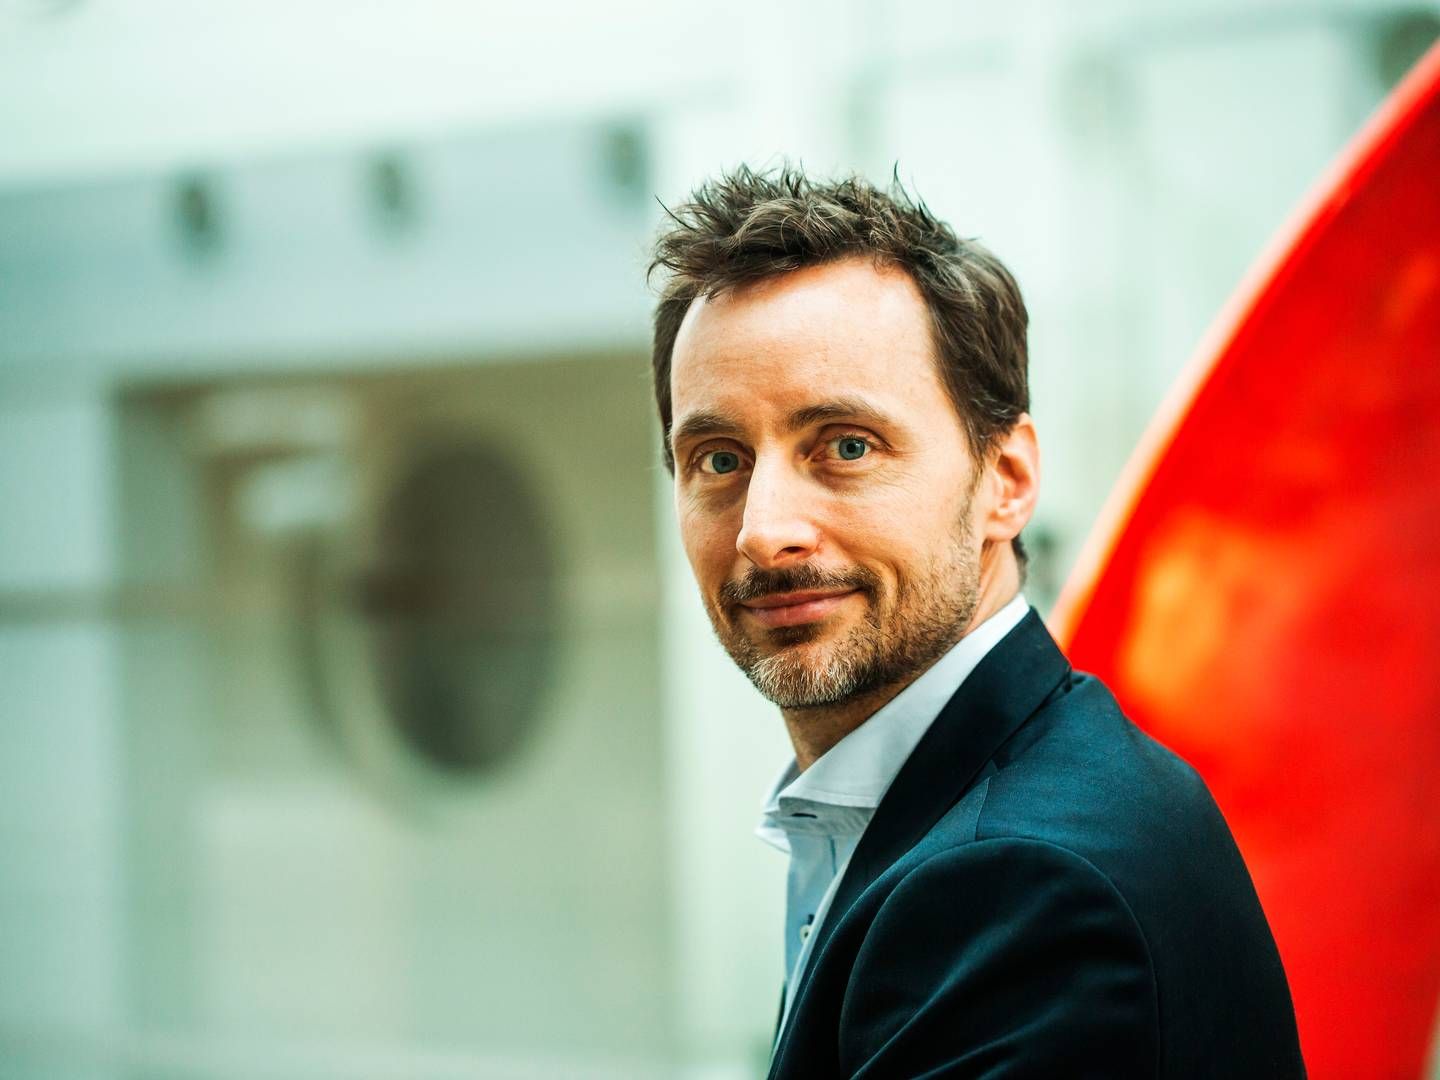 Kommerciel koncerndirektør Johan Kirstein Brammer er kommende koncernchef for Tryg. | Foto: Pr/tryg